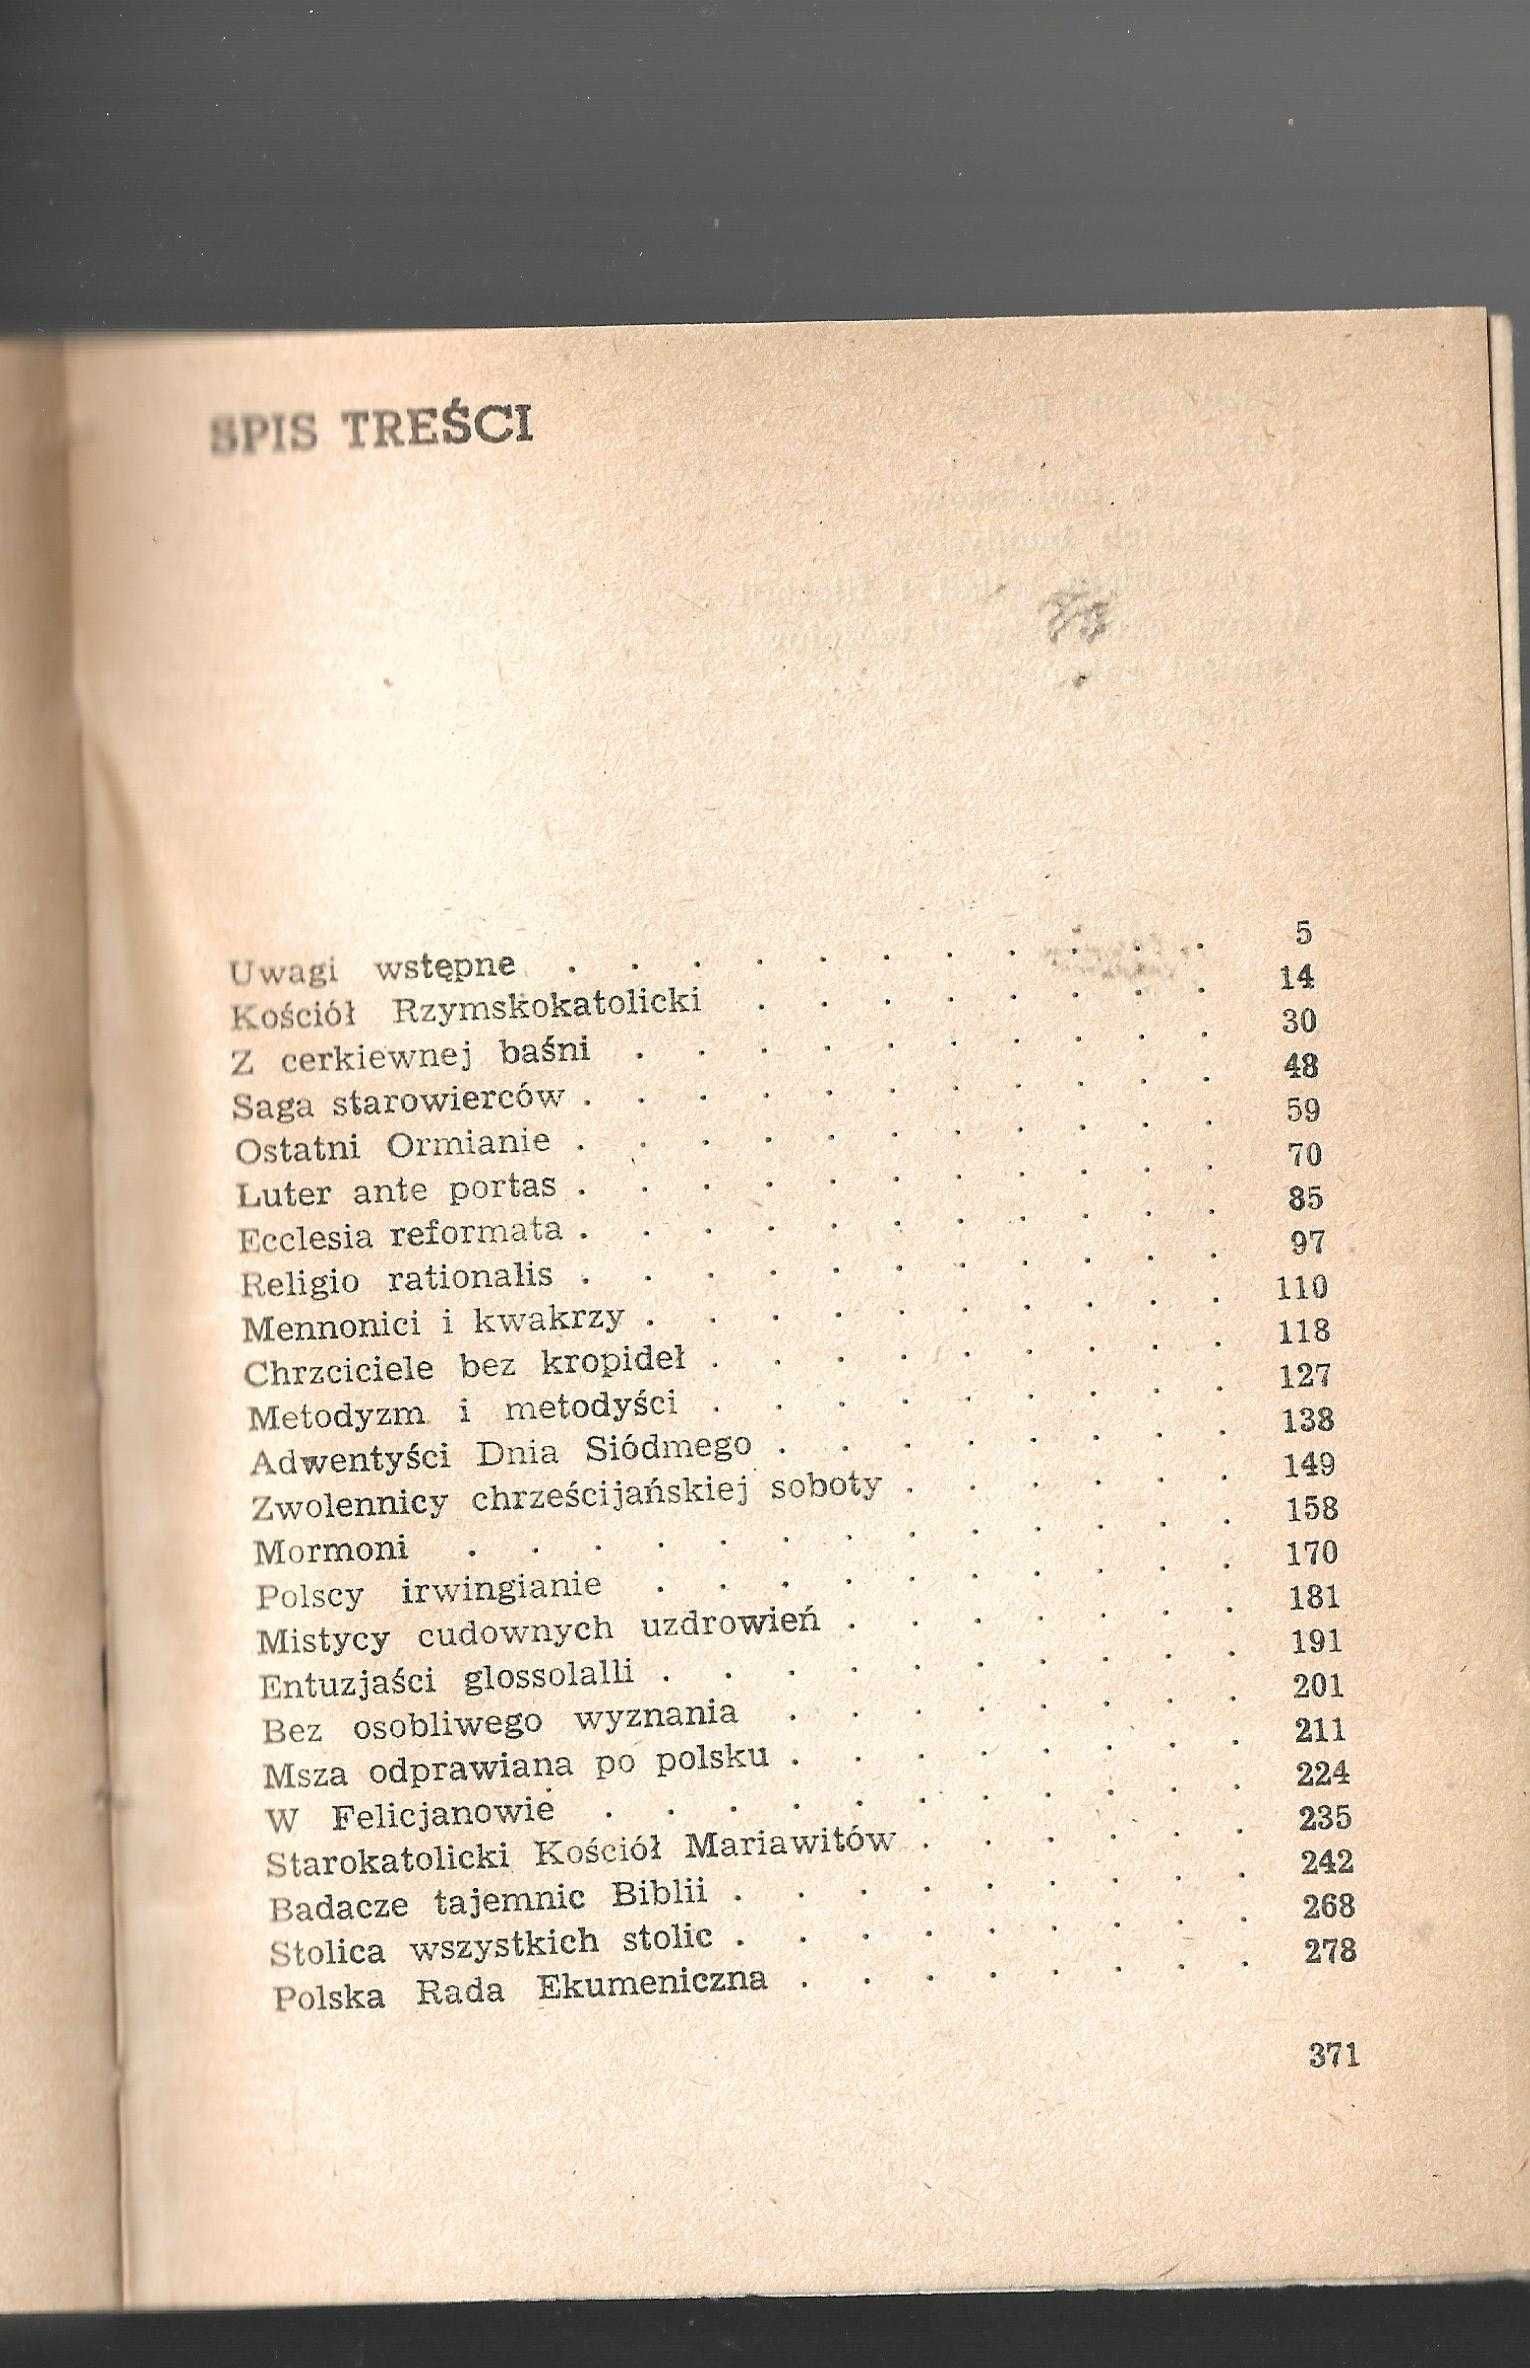 Trzydzieści wyznań Tokarczyk 1987